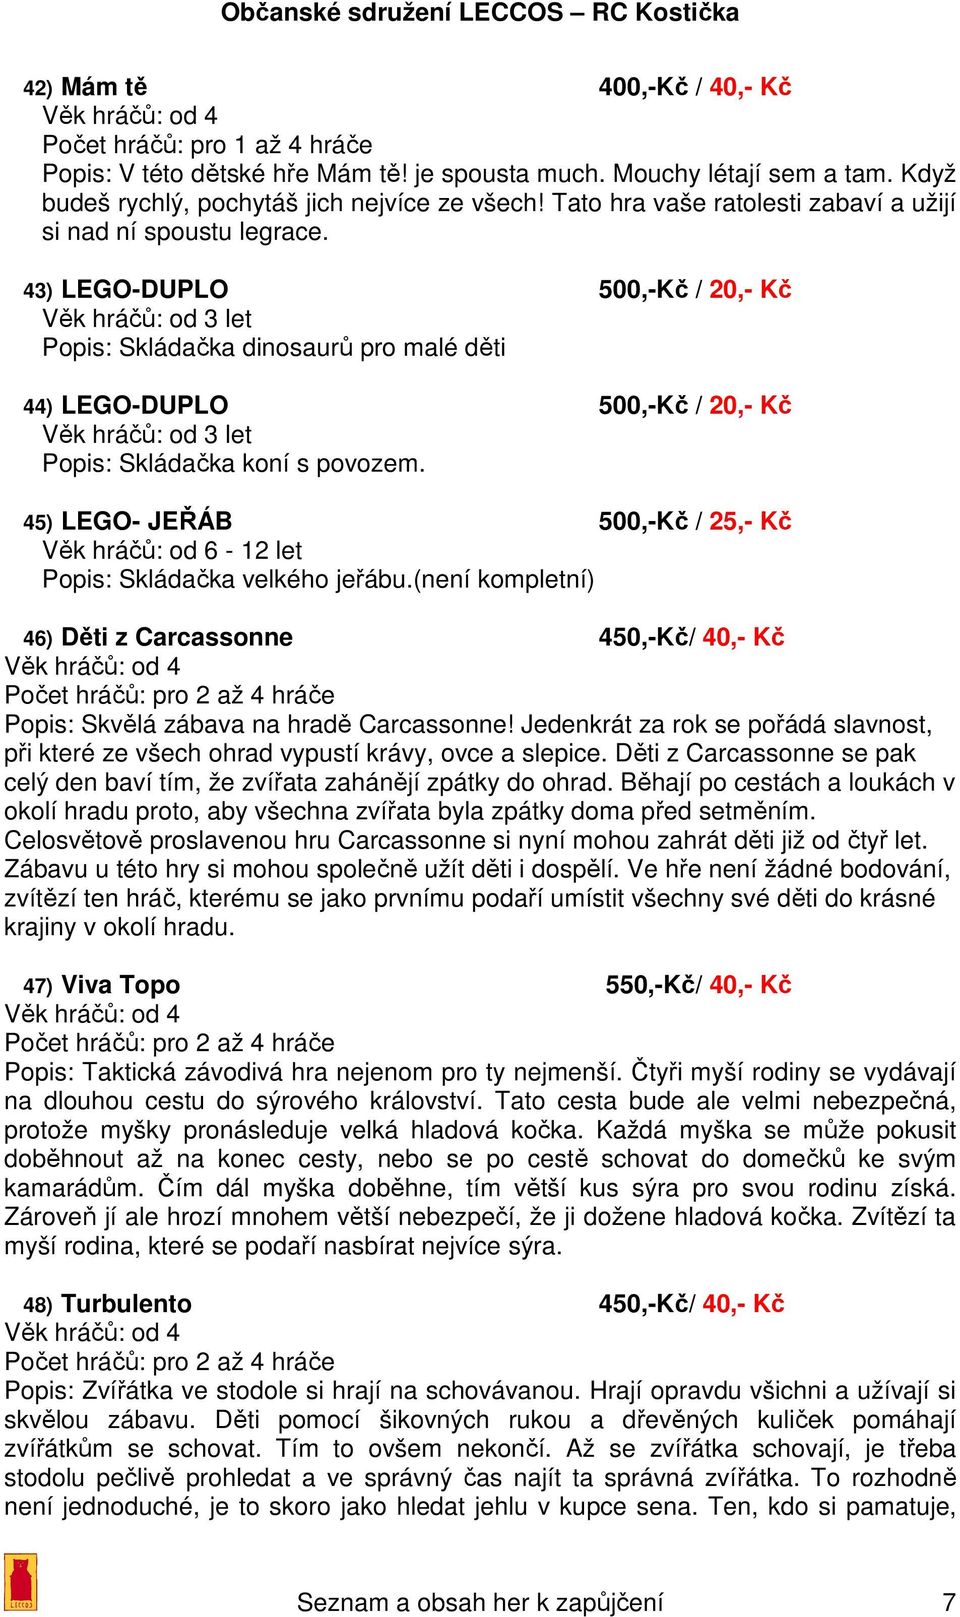 43) LEGO-DUPLO 500,-Kč / 20,- Kč Věk hráčů: od 3 let Popis: Skládačka dinosaurů pro malé děti 44) LEGO-DUPLO 500,-Kč / 20,- Kč Věk hráčů: od 3 let Popis: Skládačka koní s povozem.